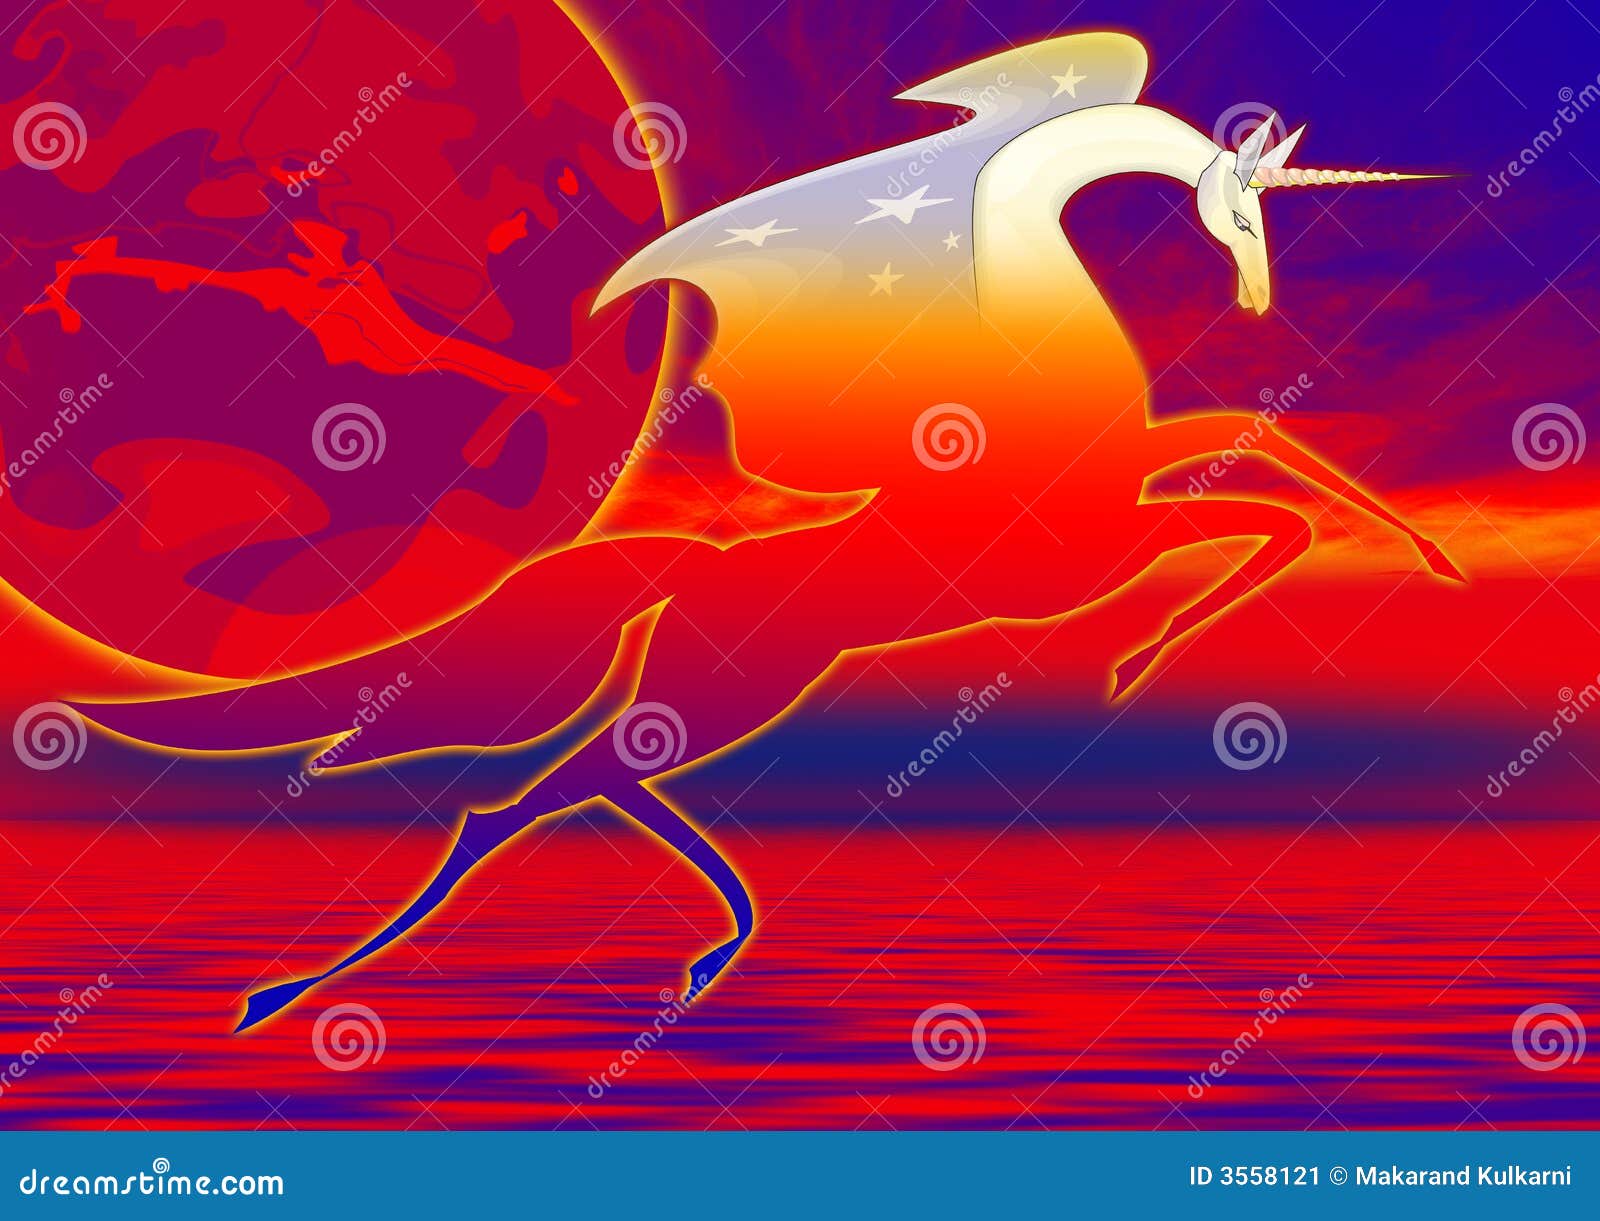 Unicorn in water stock illustration. Illustration of creature - 3558121